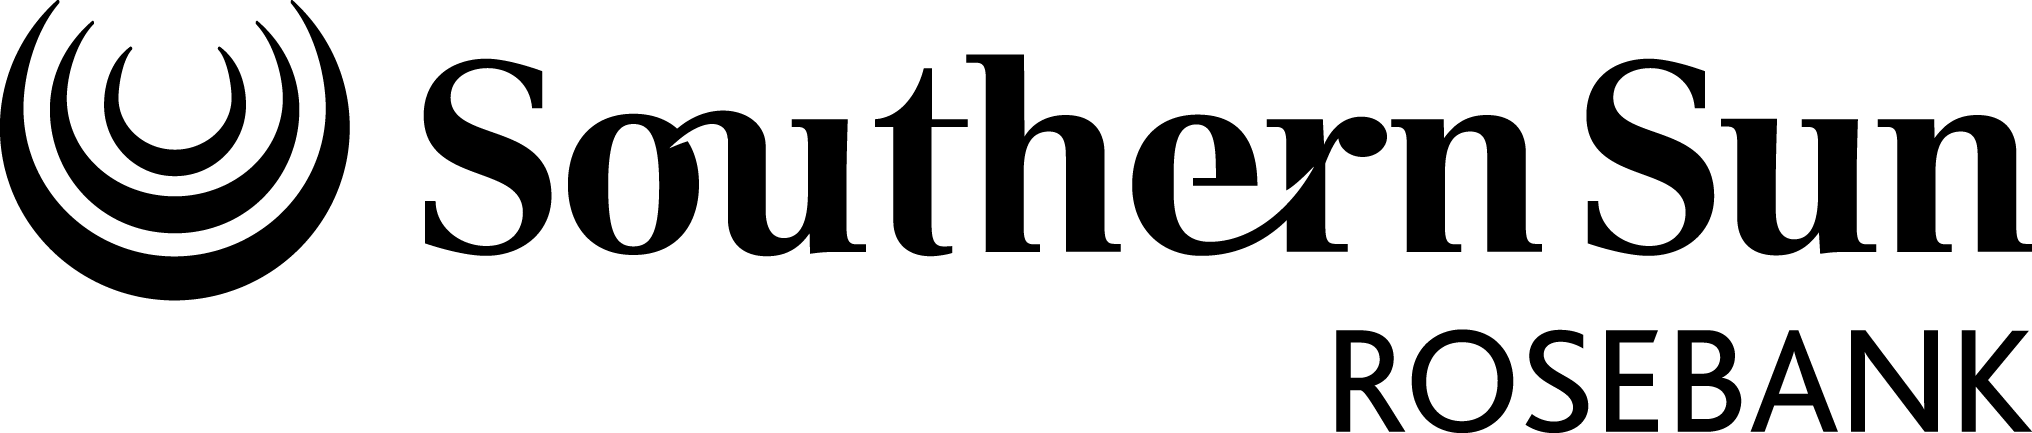 Southern Sun Rosebank Logo